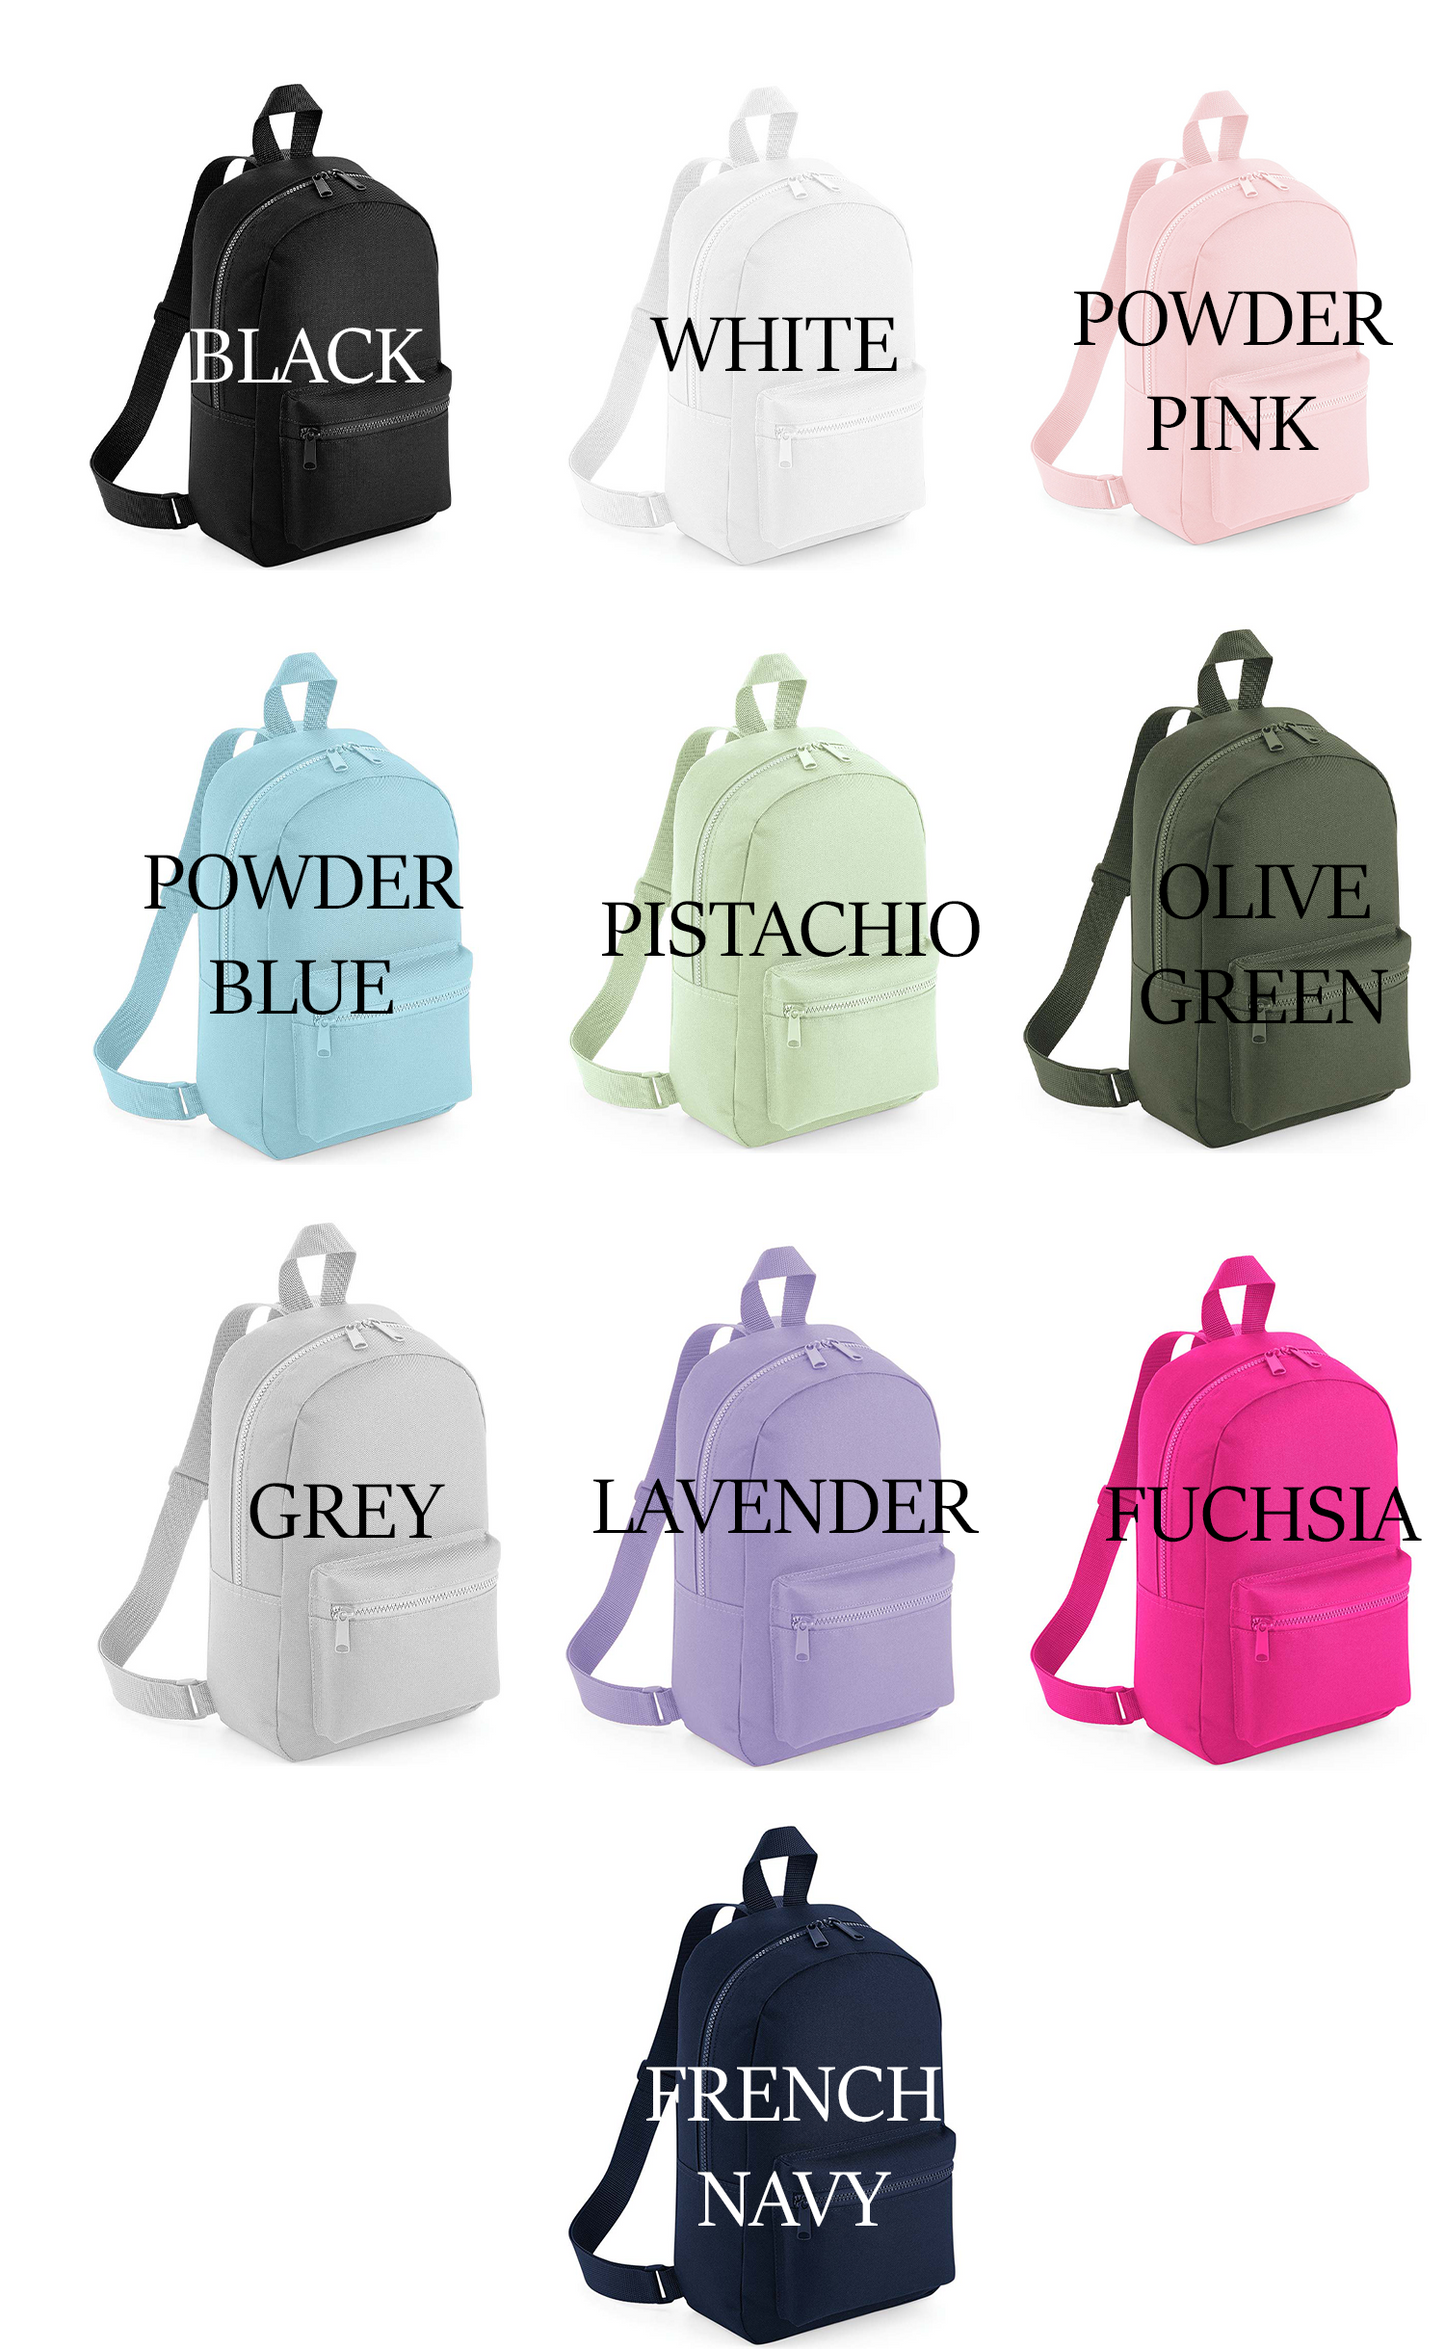 Name Star Mini Essentials Backpack